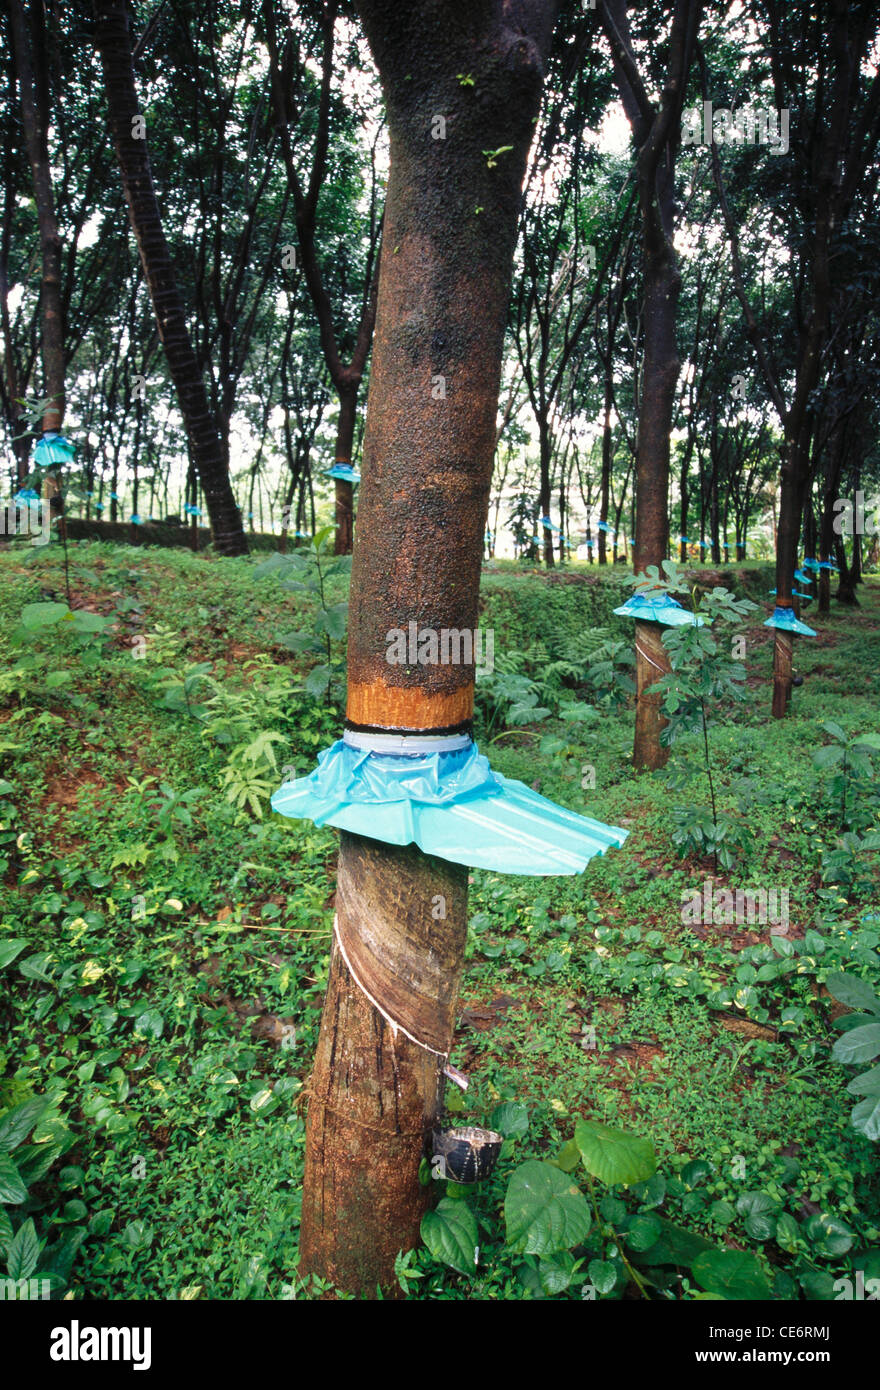 85856 BPM : la collecte du caoutchouc naturel caoutchouc sap en Inde kerala plantation tree farm Banque D'Images